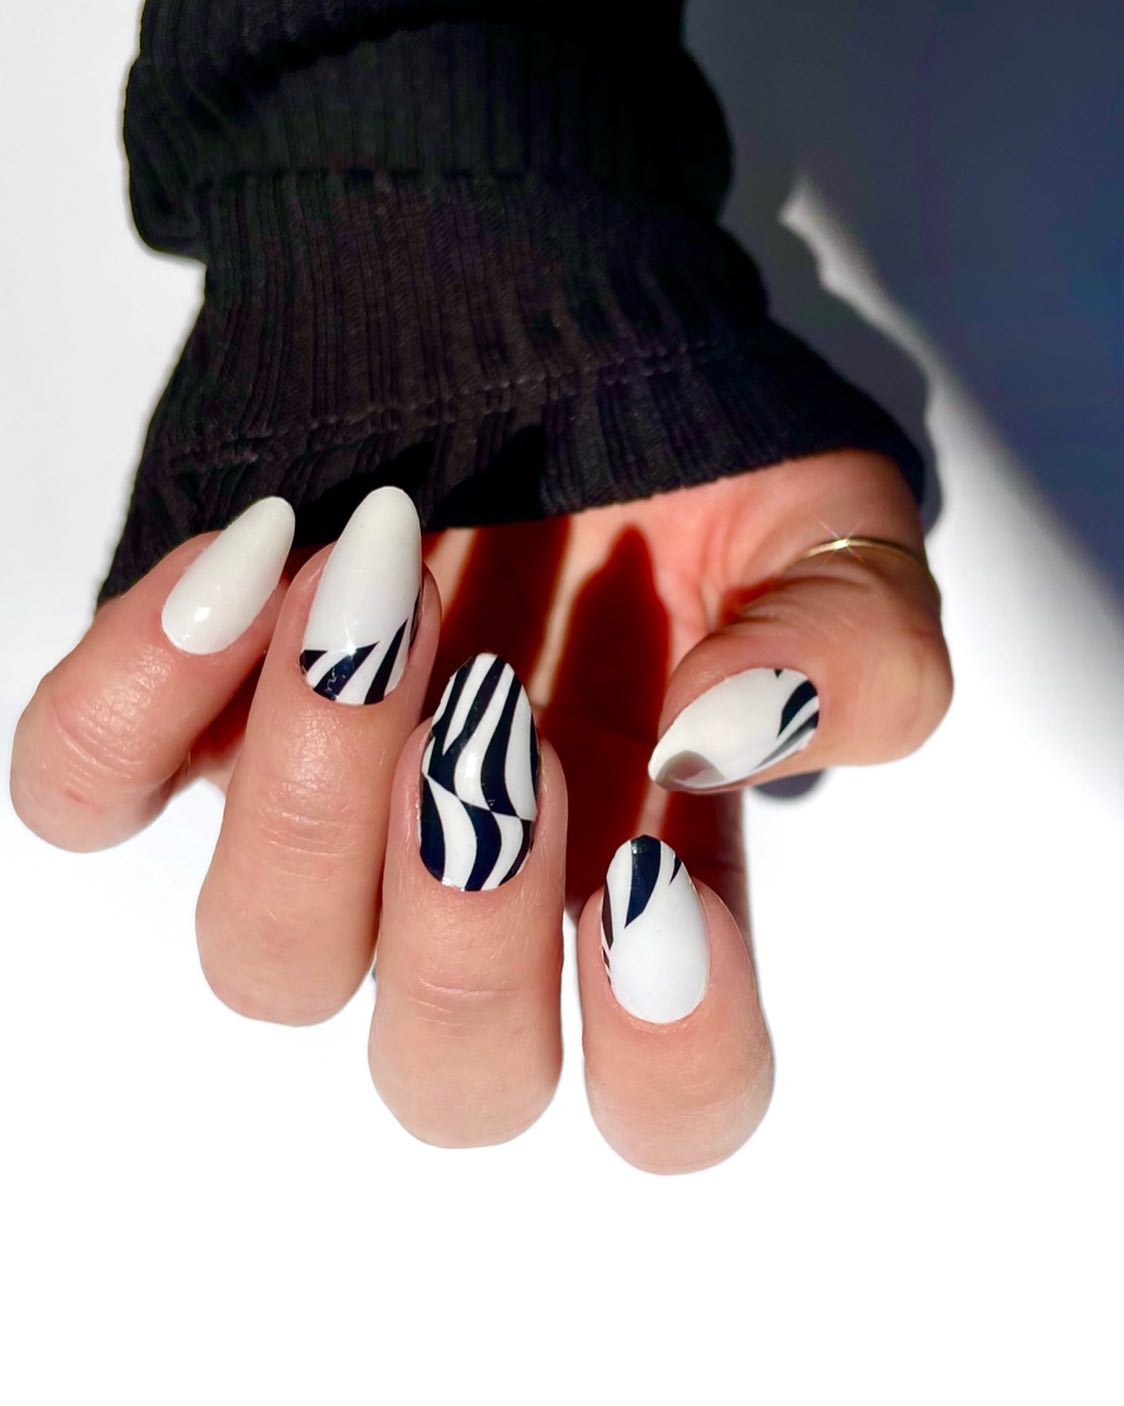 Witte nagels met zwarte zebralijnen